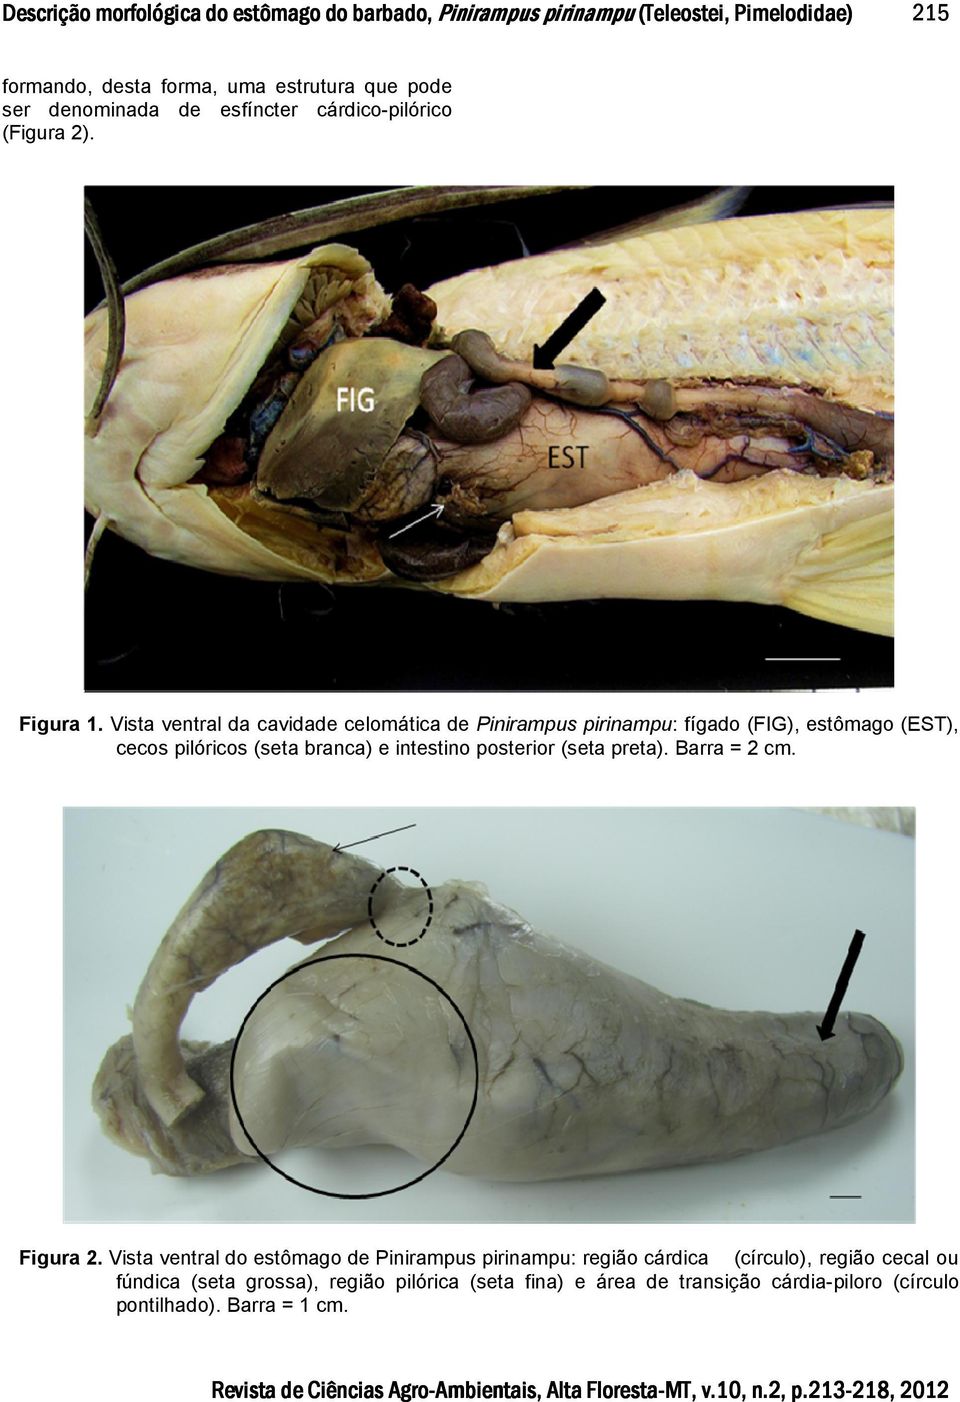 Vista ventral da cavidade celomática de Pinirampus pirinampu: fígado (FIG), estômago (EST), cecos pilóricos (seta branca) e intestino posterior (seta preta). Barra = 2 cm. Figura 2.